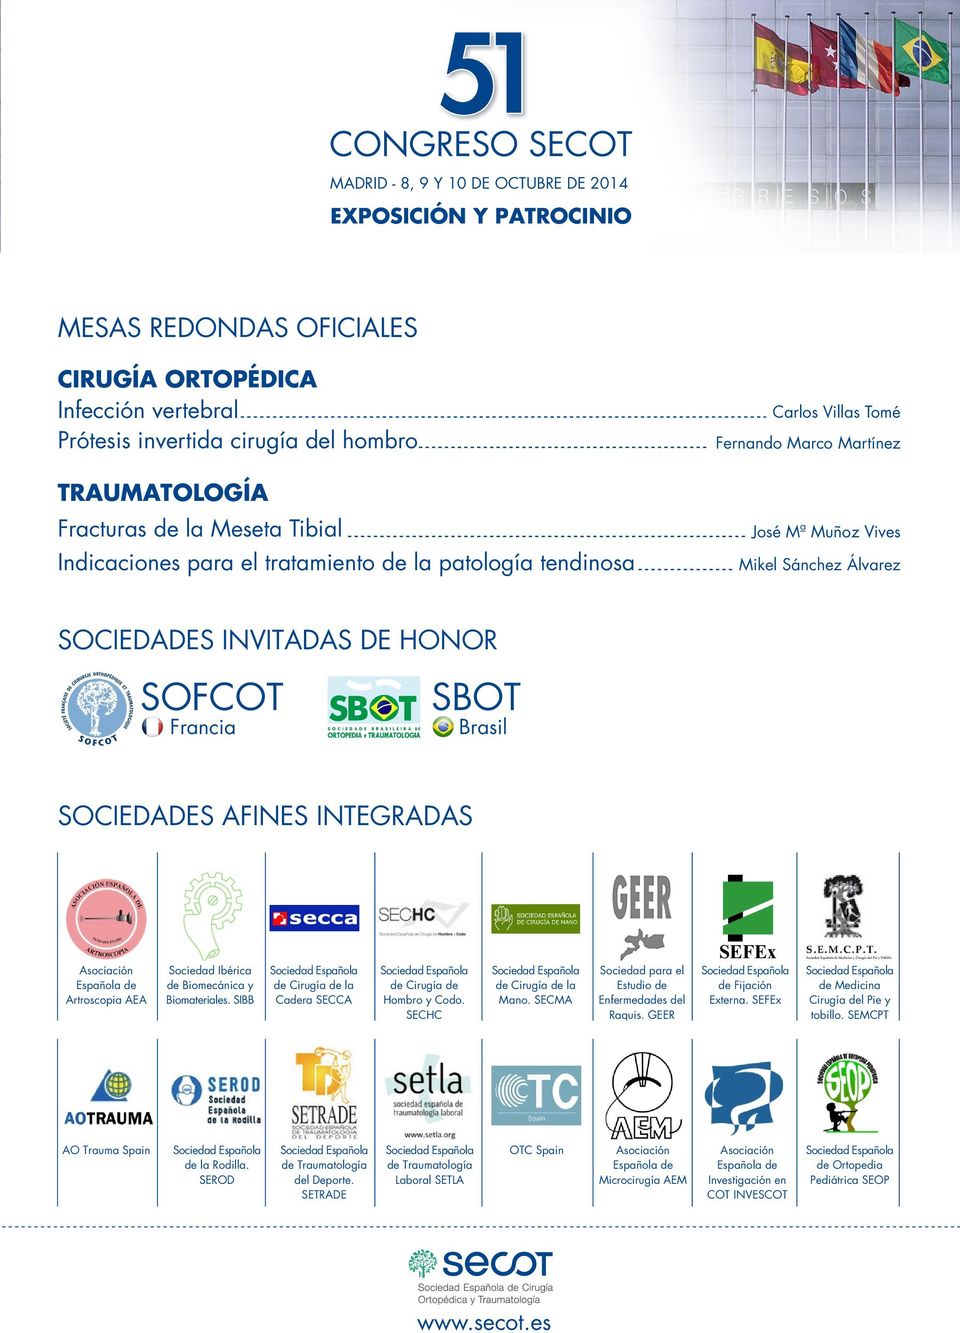 Española de Artroscopia AEA Sociedad Ibérica de Biomecánica y Biomateriales. SIBB de Cirugía de la Cadera SECCA de Cirugía de Hombro y Codo. SECHC de Cirugía de la Mano.